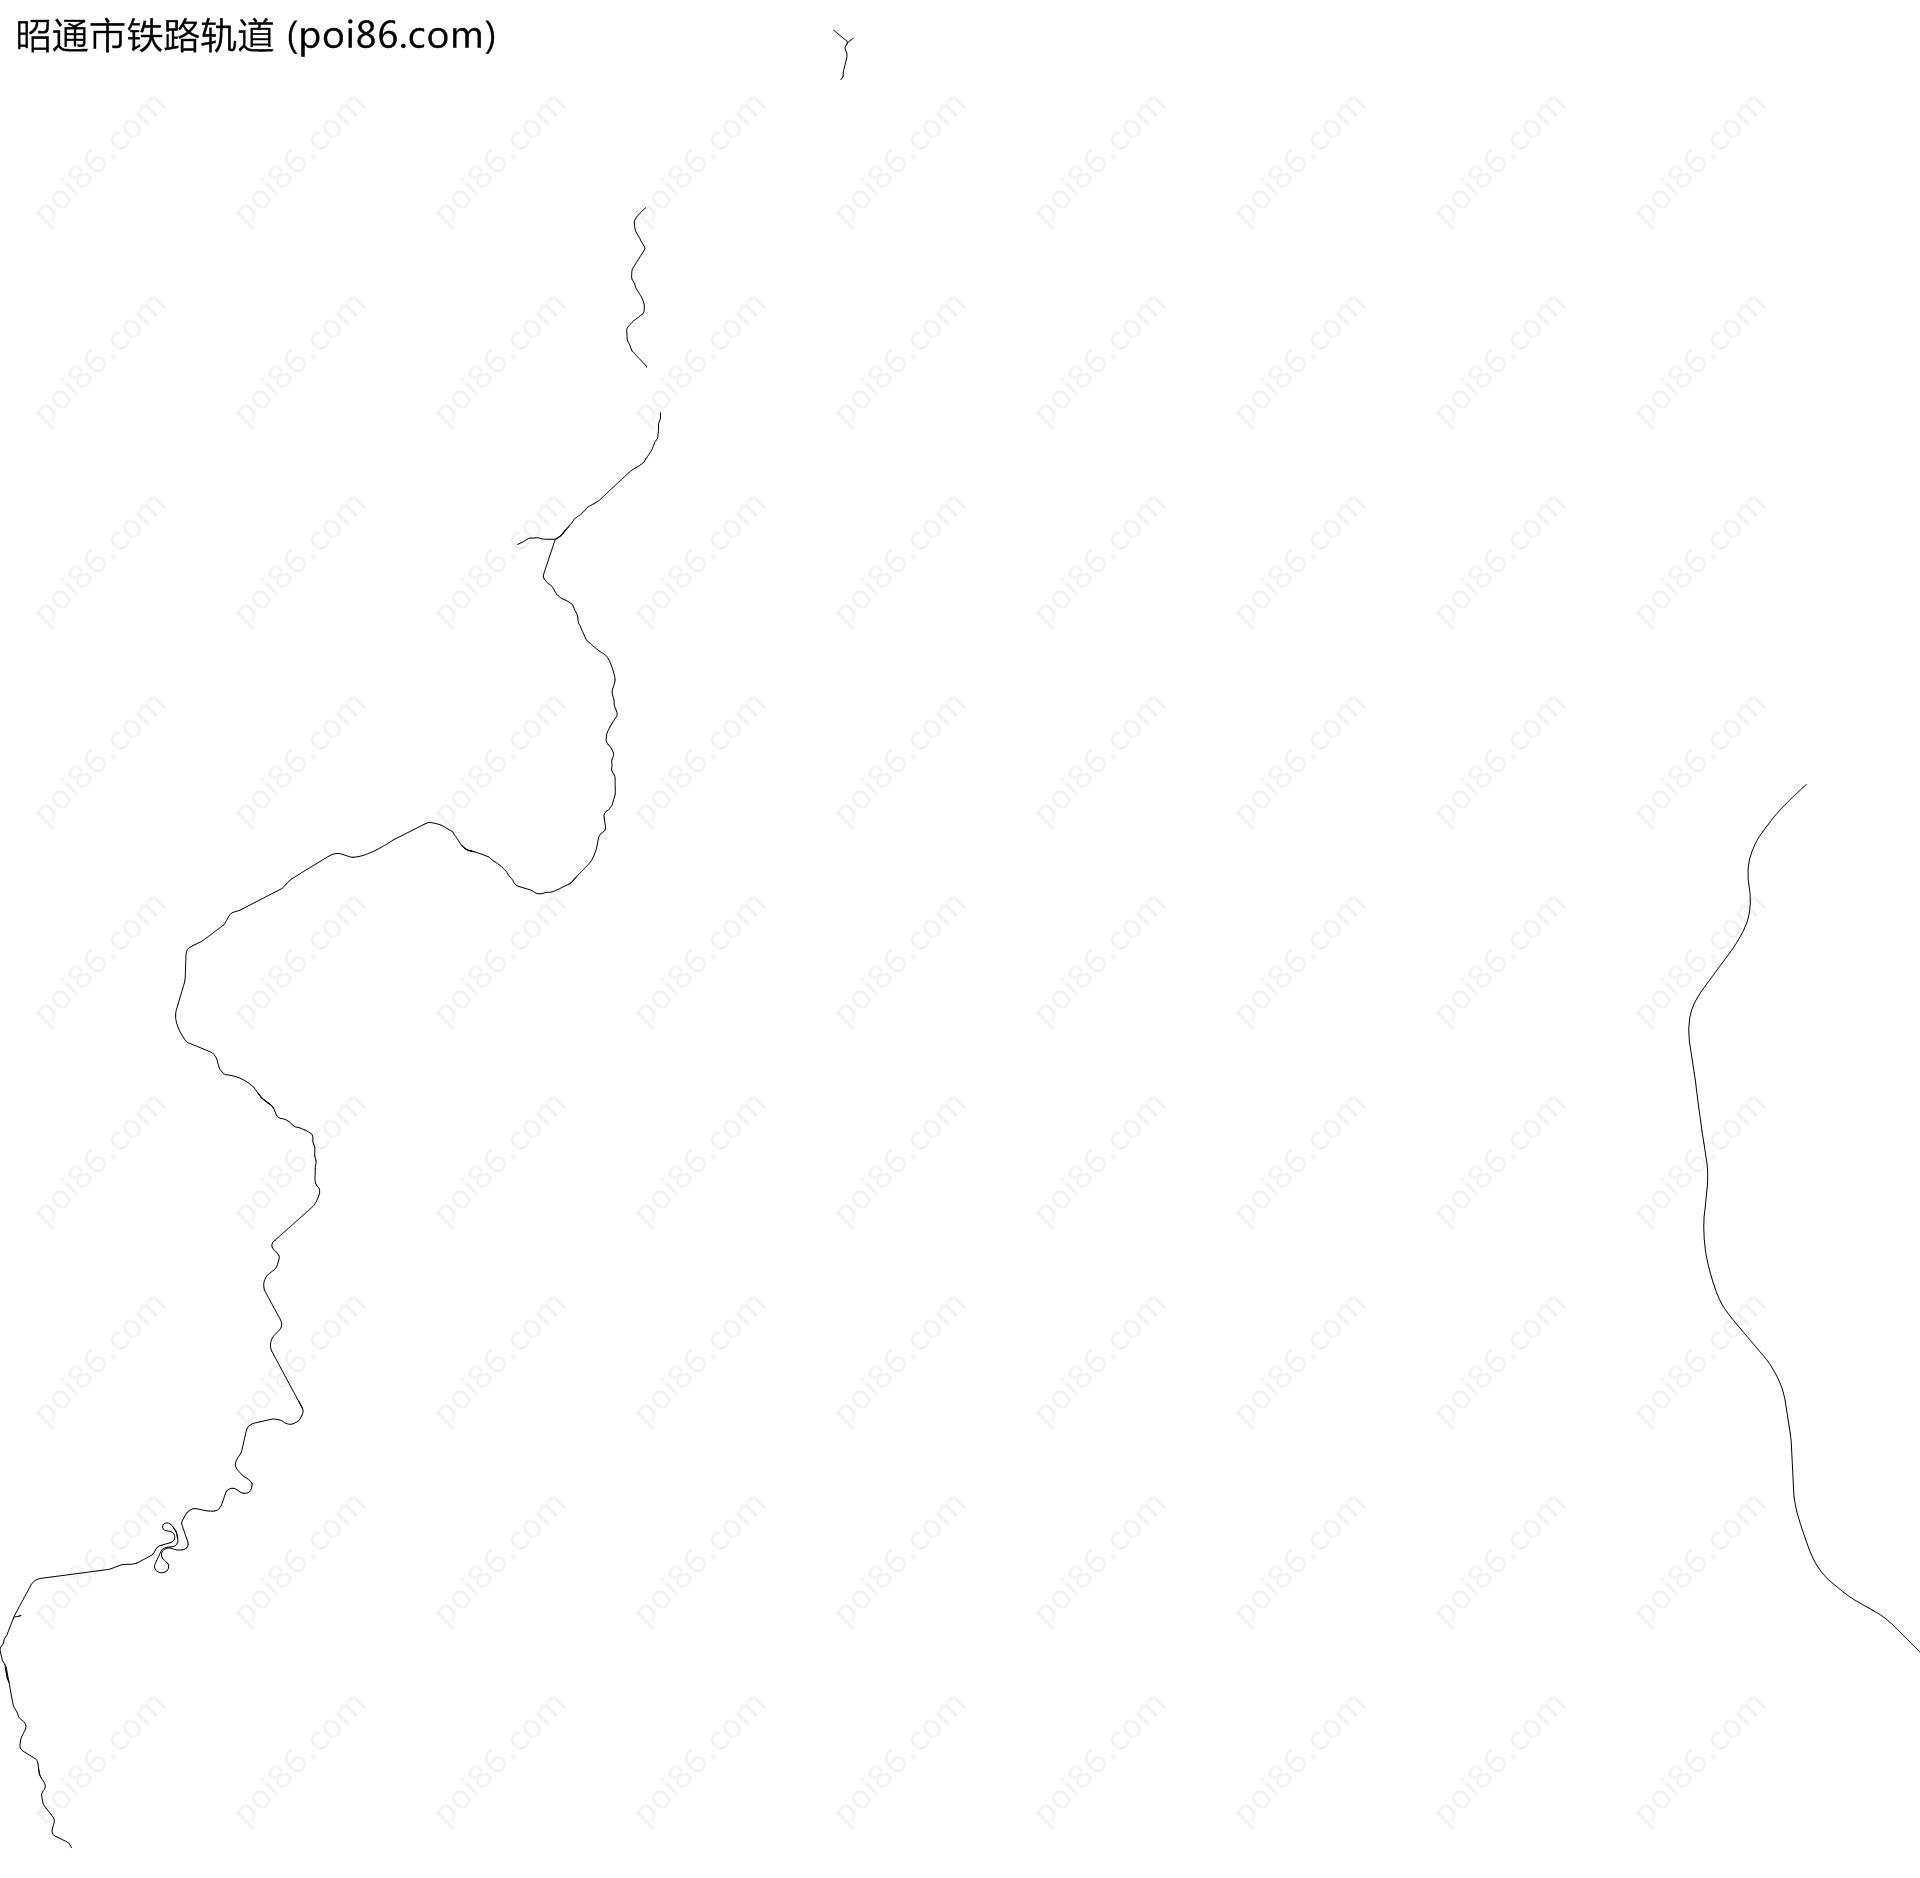 昭通市铁路轨道地图